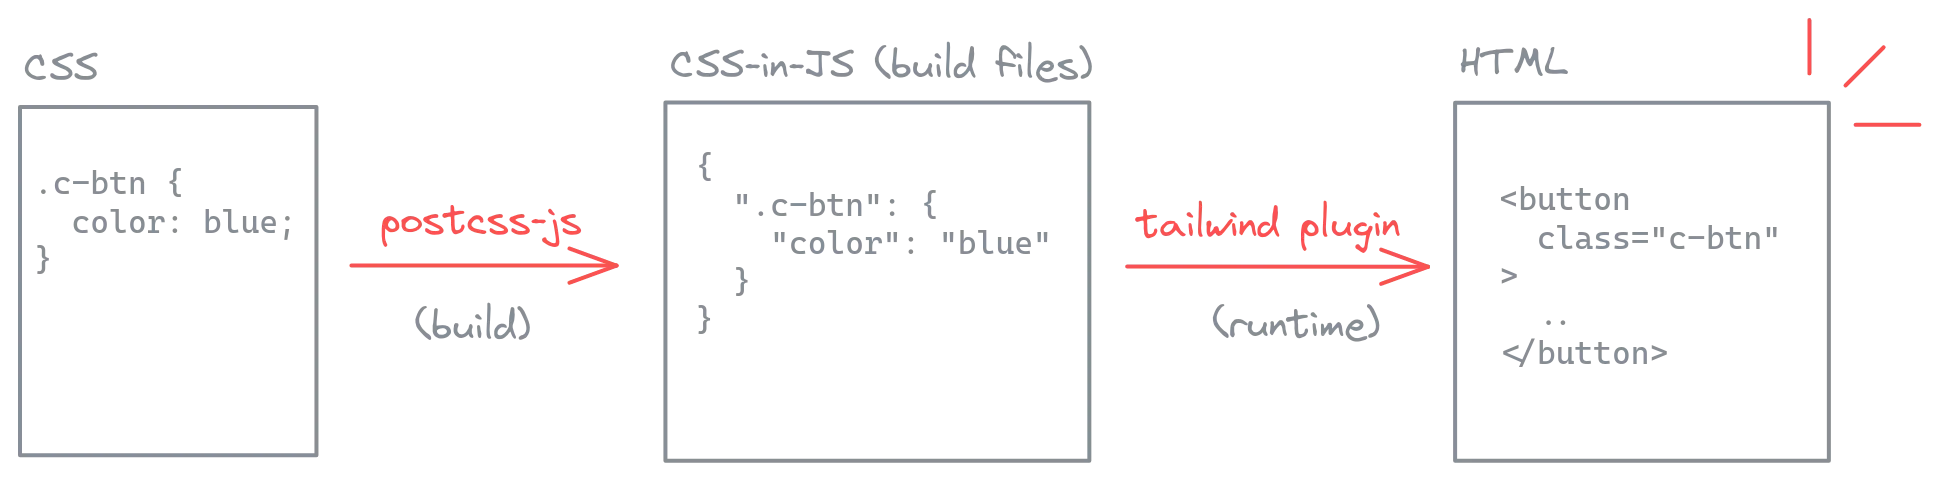 build step riêng giúp lưu kết quả của quá trình chuyển đổi từ CSS sang CSS-in-JS